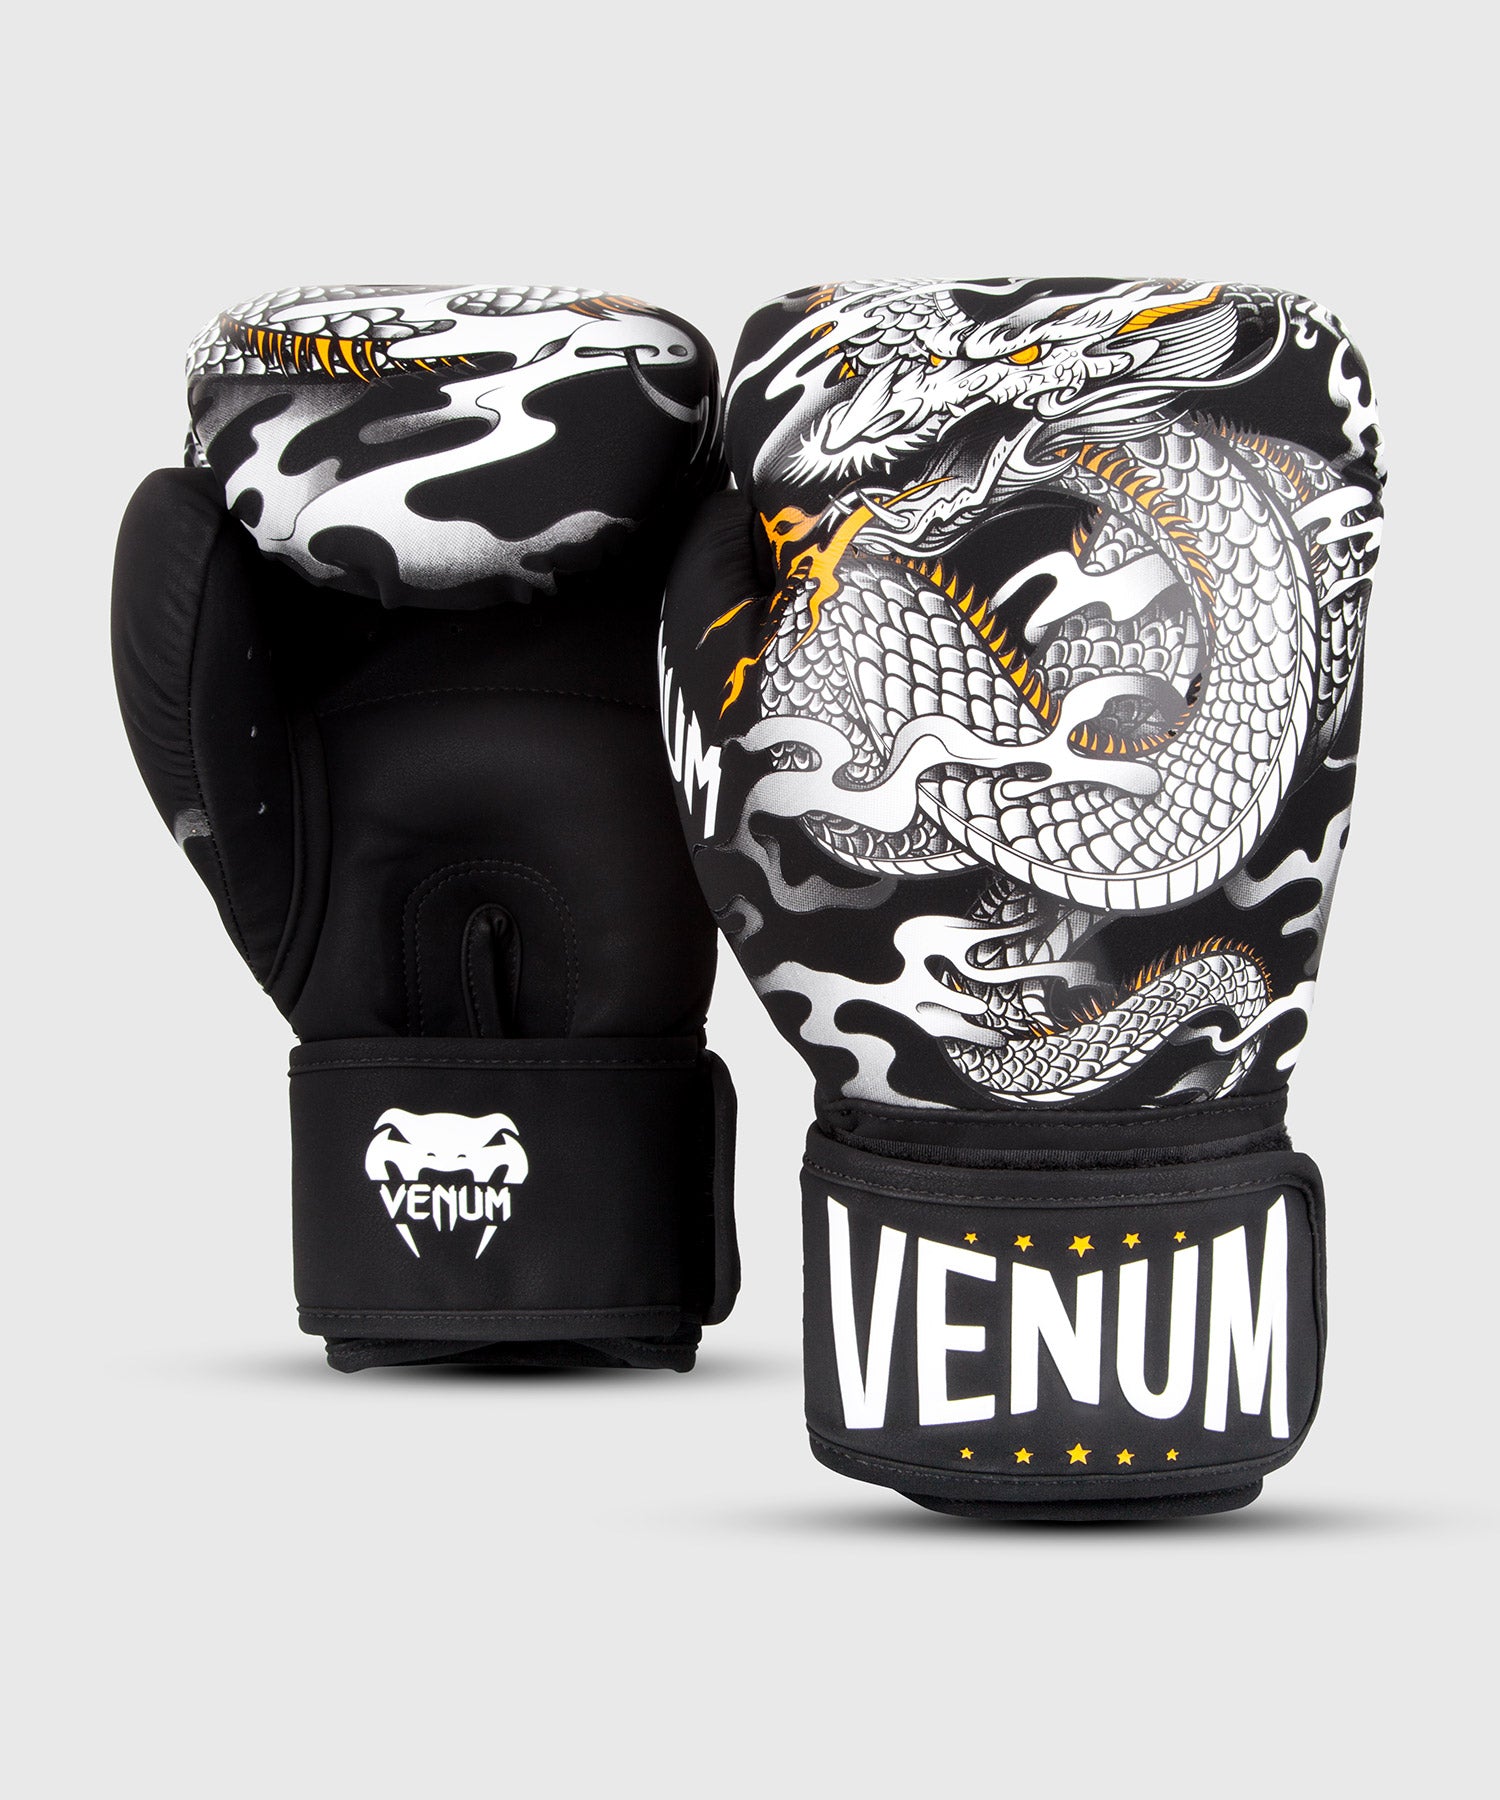 Gants de boxe Venum Lightning - Or/Noir - The Fight Club